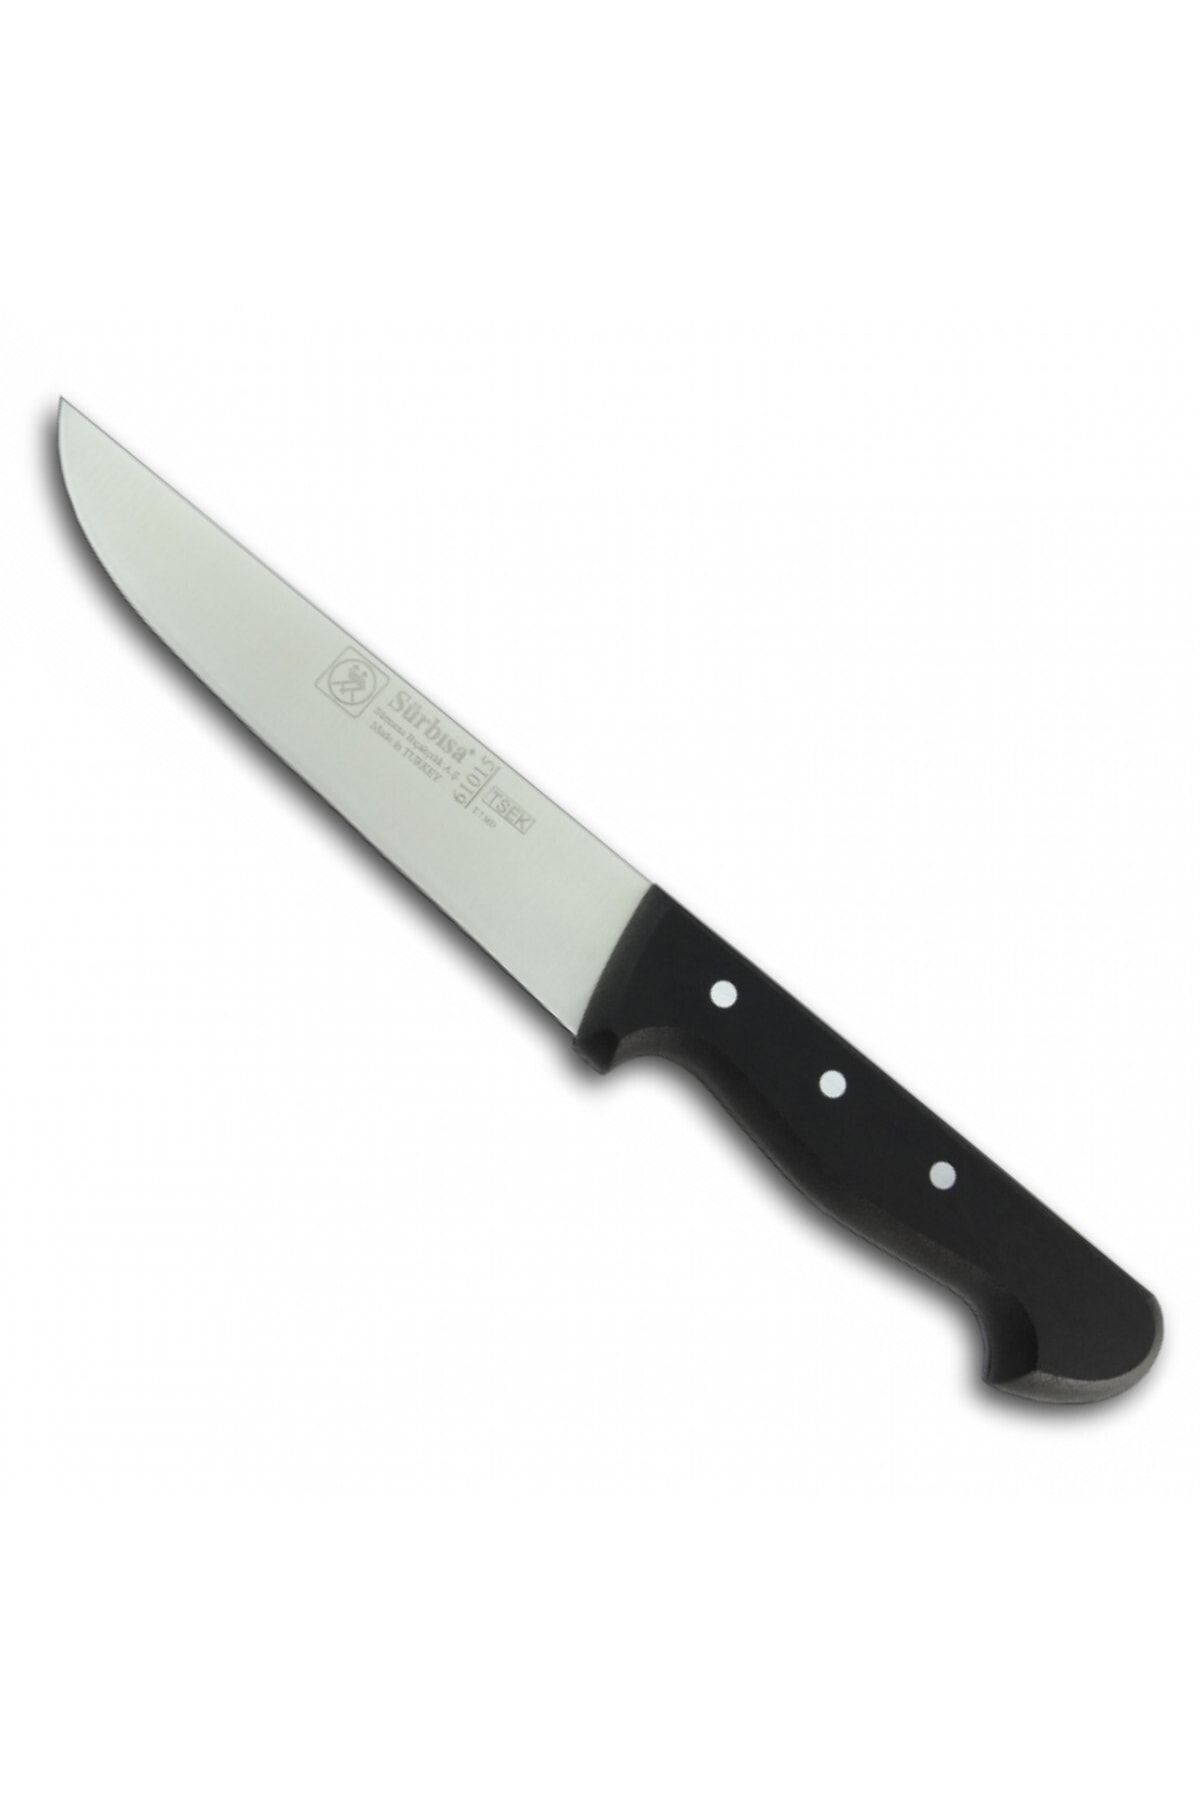 Sürbisa 61015 Mutfak Bıçağı 16,5 cm (pimli)